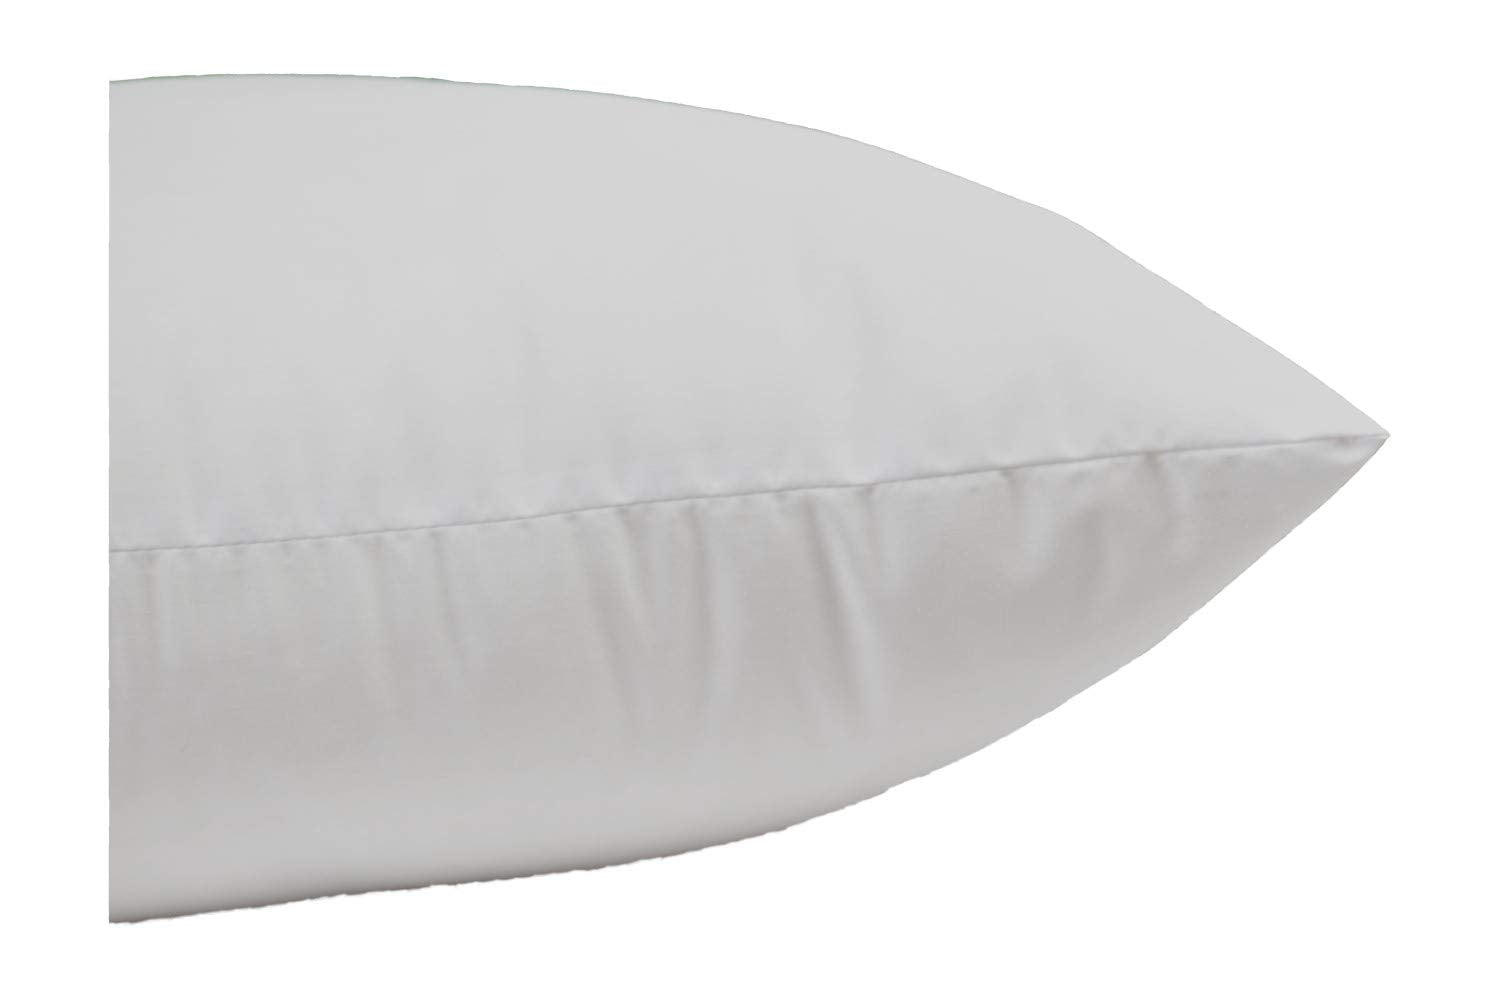 16x16 pillow insert, 16 pillow insert, 16” pillow, decorative pillow inserts, 16 x 16 pillow covers, decorative pillows, throw pillows, designer pillow pillows decorative, pillows and throw, Couch Throw decorative sofa pillows, sofa pillow, floor pillow 1